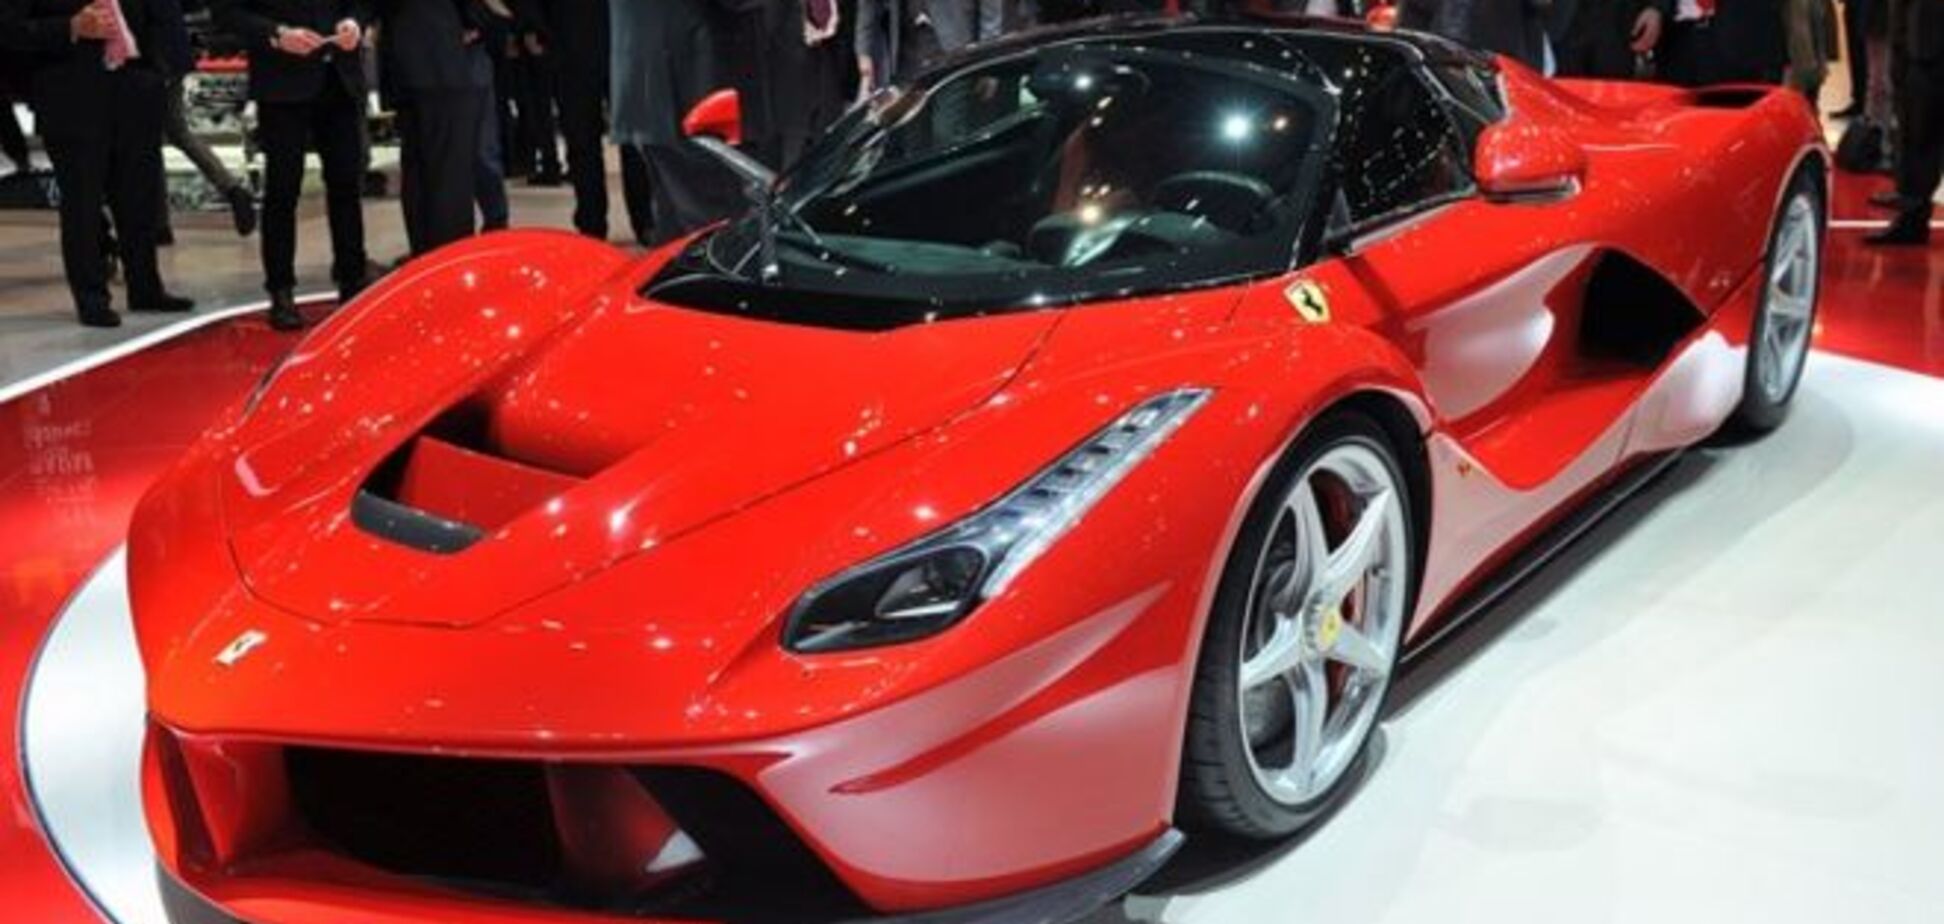 Из-за угрозы жизни Ferrari отозвала свои супергибриды